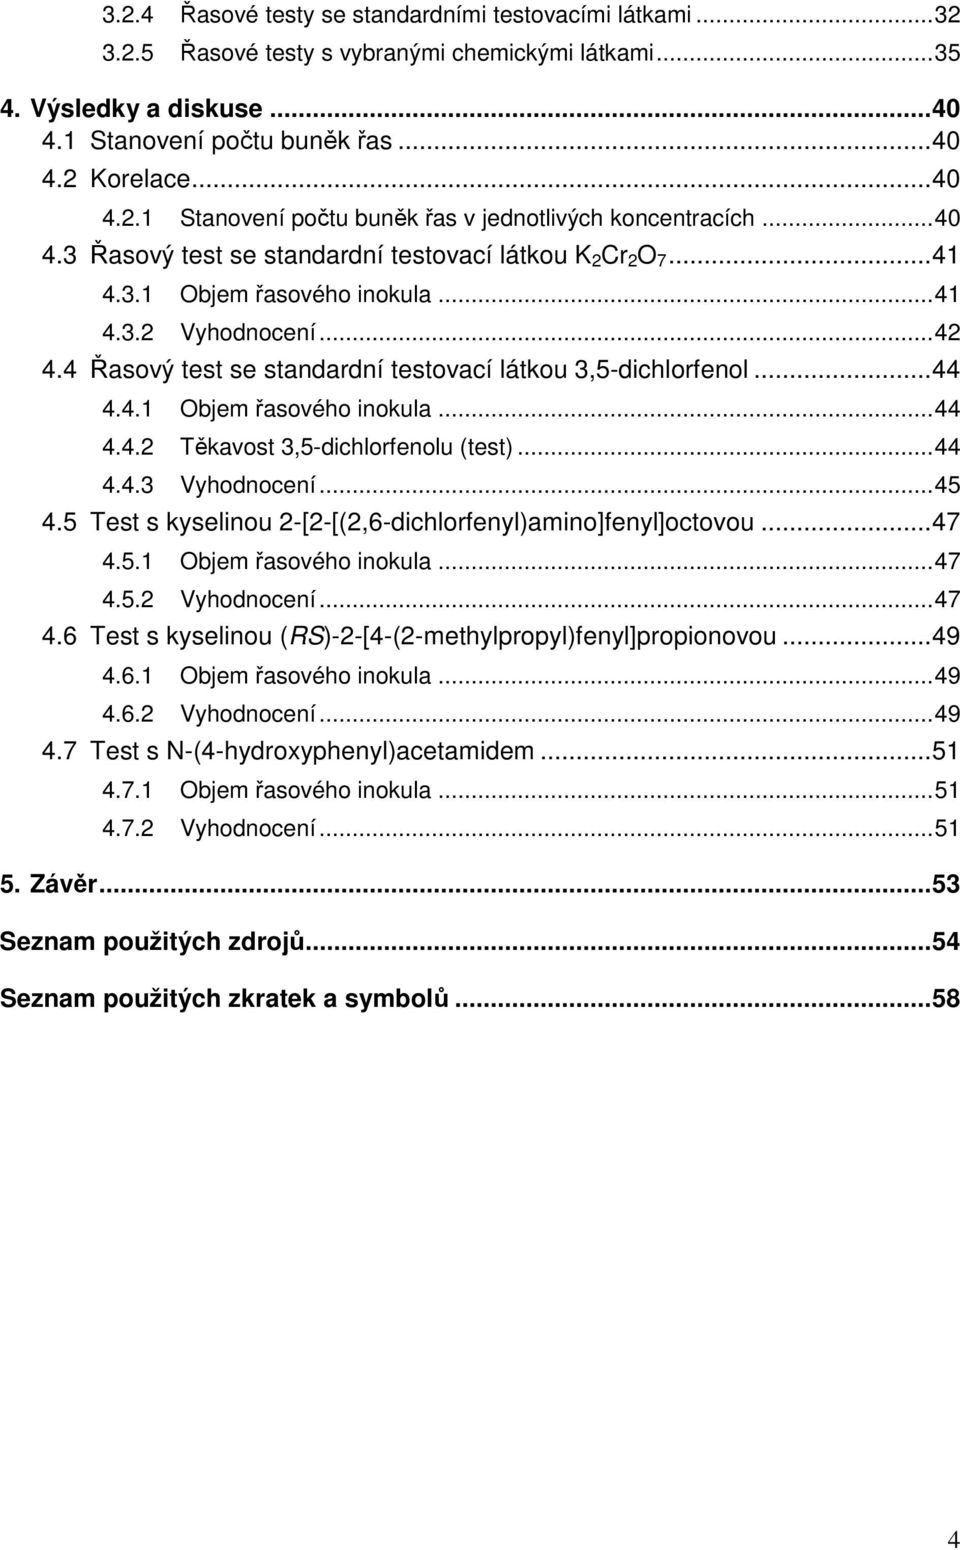 ..44 4.4.3 Vyhodnocení...45 4.5 Test s kyselinou 2-[2-[(2,6-dichlorfenyl)amino]fenyl]octovou...47 4.5.1 Objem řasového inokula...47 4.5.2 Vyhodnocení...47 4.6 Test s kyselinou (RS)-2-[4-(2-methylpropyl)fenyl]propionovou.